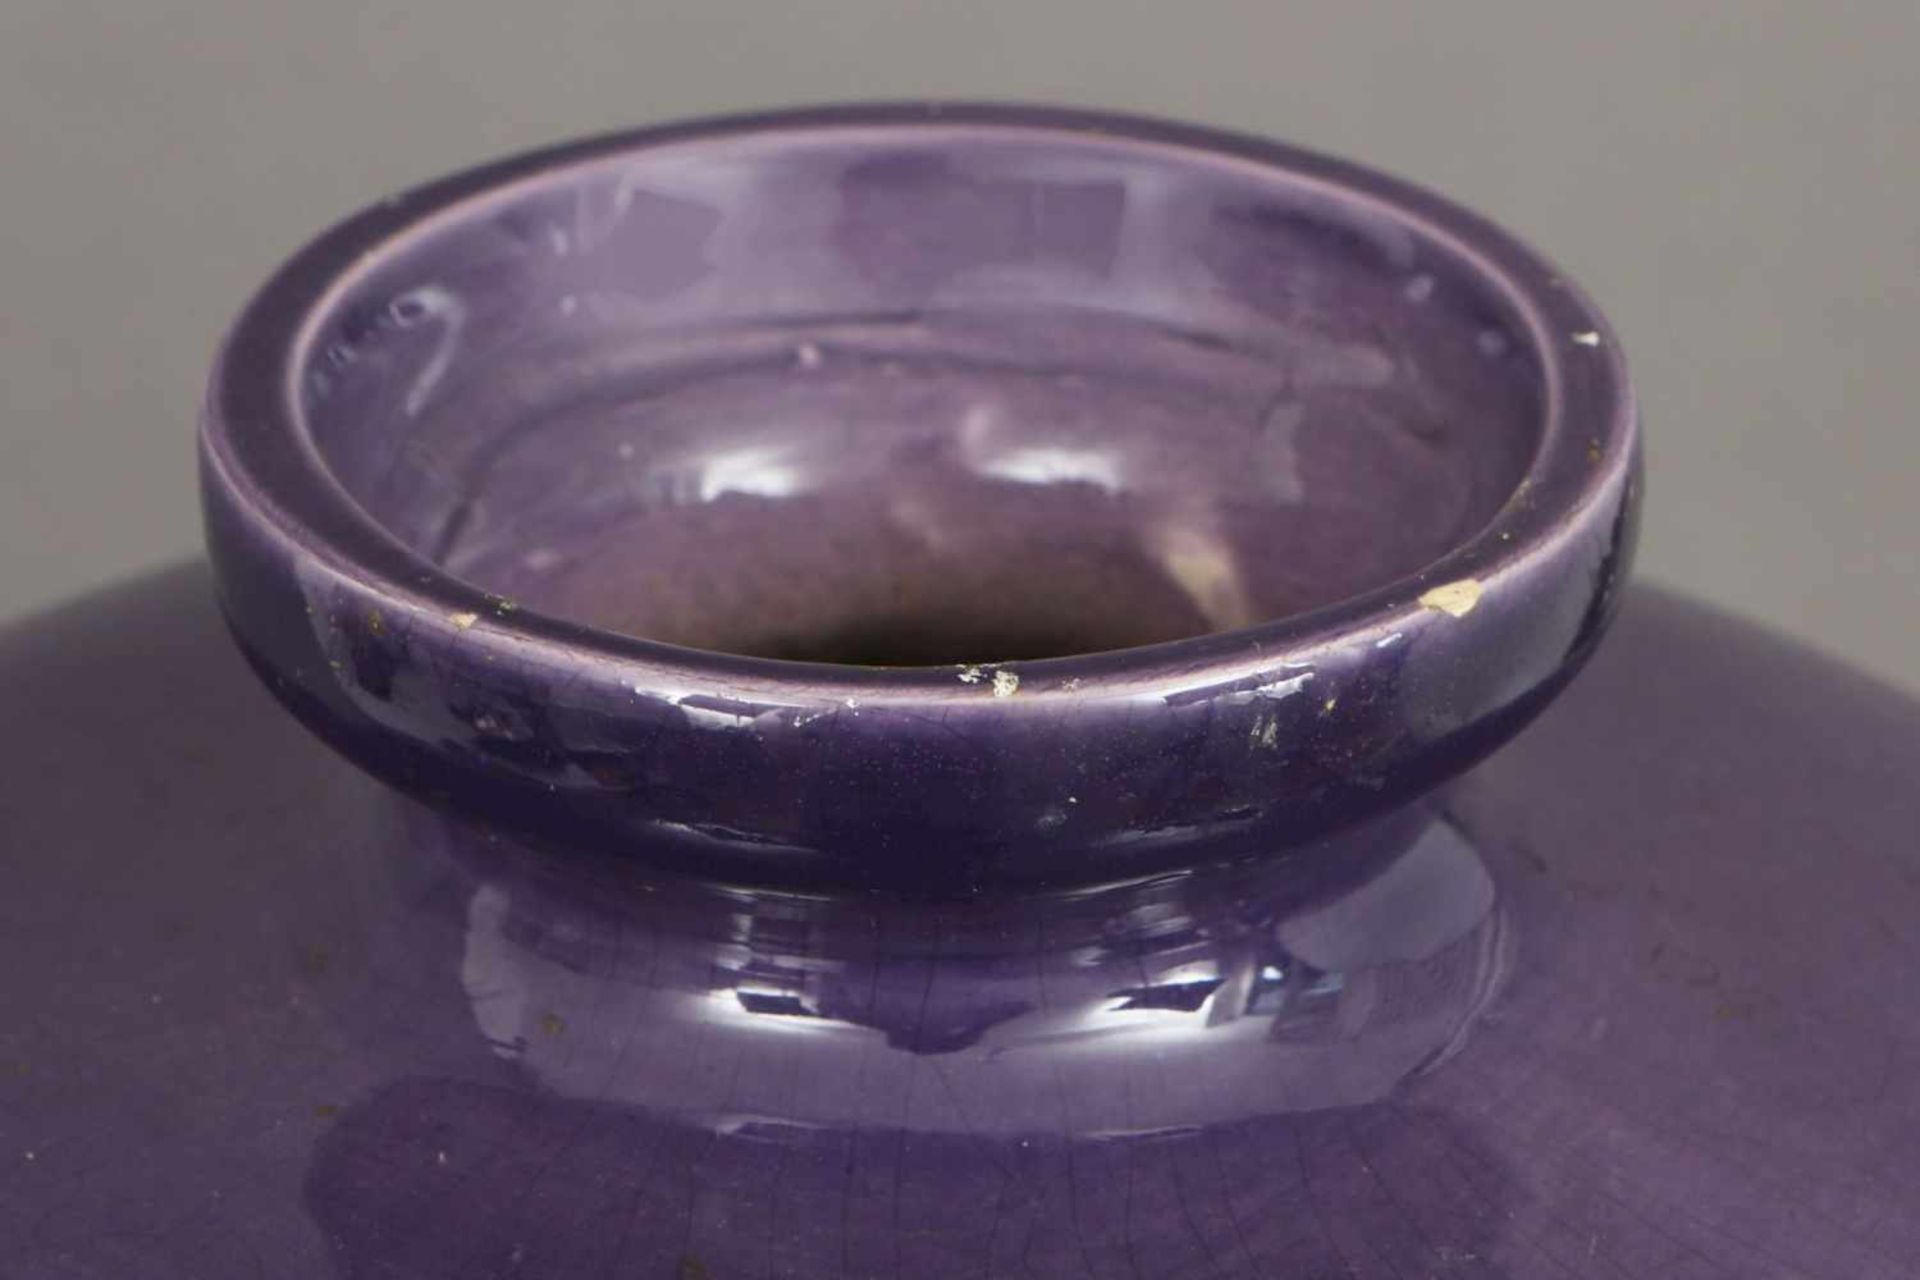 Keramikvase in Meiping-Form ovoider Korpus mit eingezogenem Hals und ausgestellter Mündung, - Image 2 of 2